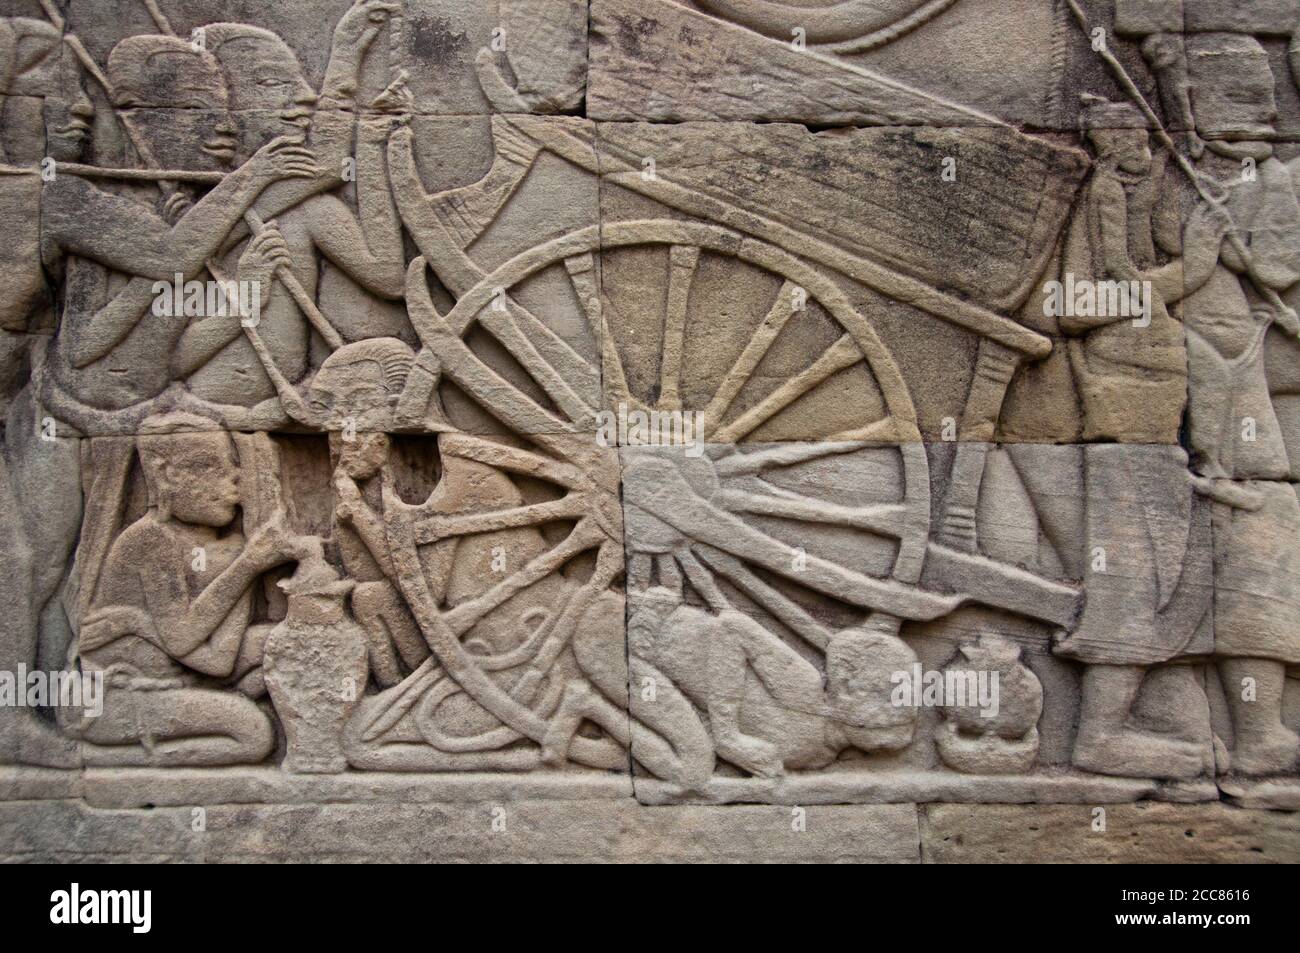 Kambodscha: Im Lager der Khmer-Armee bläst ein Mann auf ein Feuer, um neben einem Ochsenkarren, der Ostwand mit Flachrelief, dem südlichen Teil, dem Bayon, Angkor Thom, etwas zu kochen. Der Bayon war ursprünglich der offizielle Staatstempel des Mahayana Buddhistischen Königs Jayavarman VII. Das Bayon, im Zentrum von Angkor Thom (große Stadt), wurde im 12. Jahrhundert von König Jayavarman VII. Gegründet Angkor Thom, was ‘die große Stadt’ bedeutet, liegt eine Meile nördlich von Angkor Wat. Es wurde im späten 12. Jahrhundert CE von König Jayavarman VII. Gebaut Stockfoto